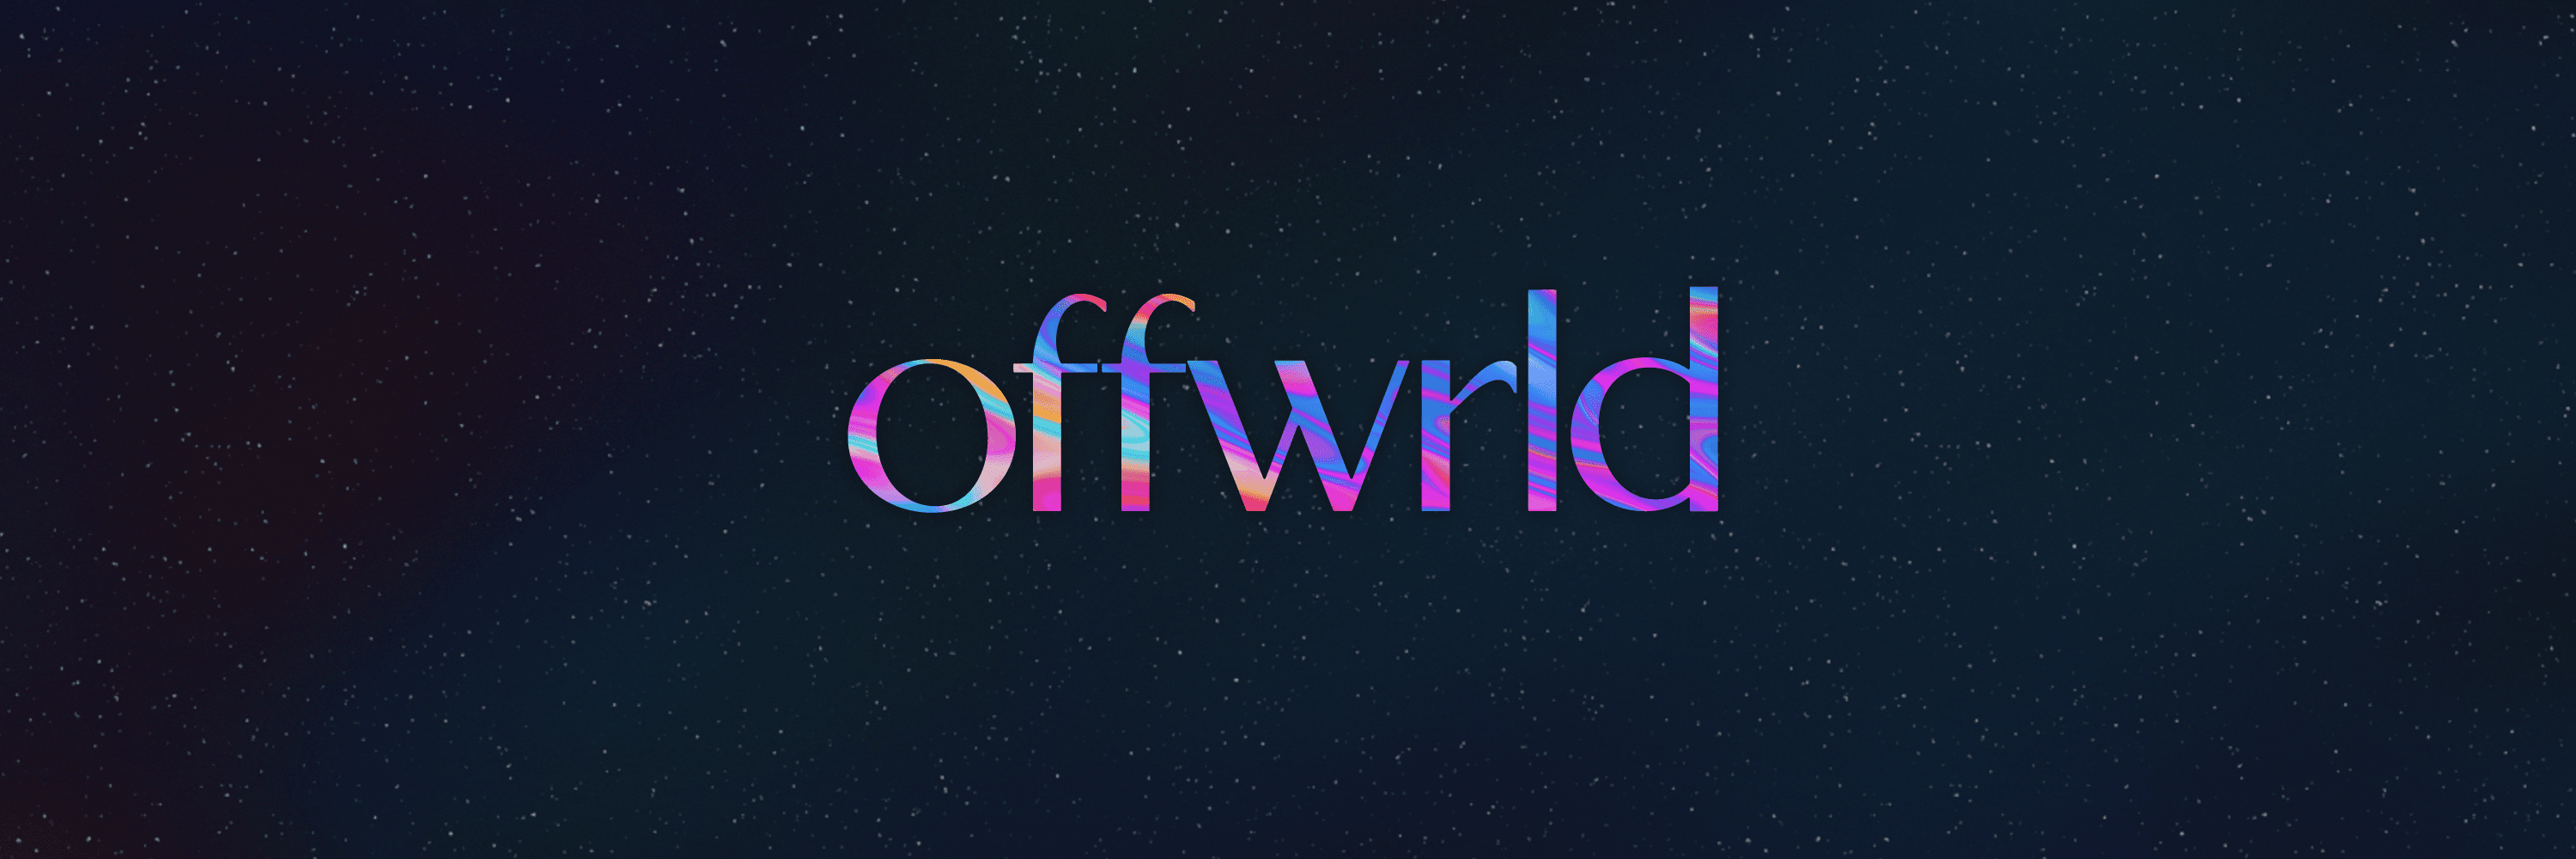 offwrld banner